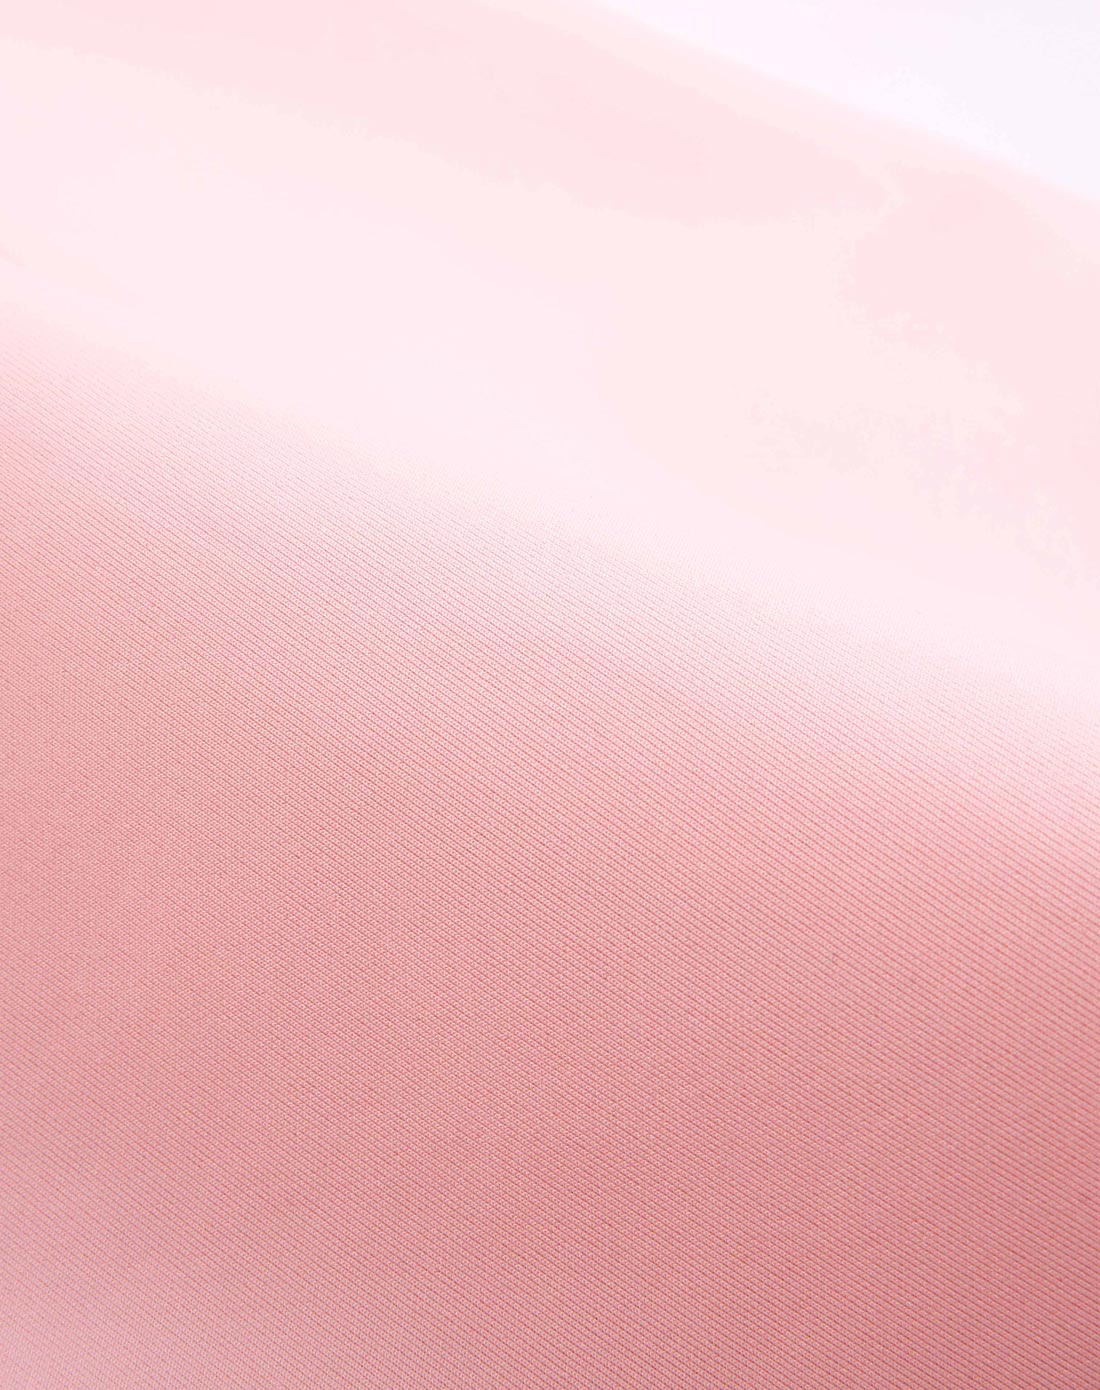 淡粉色纯色底图高清图片